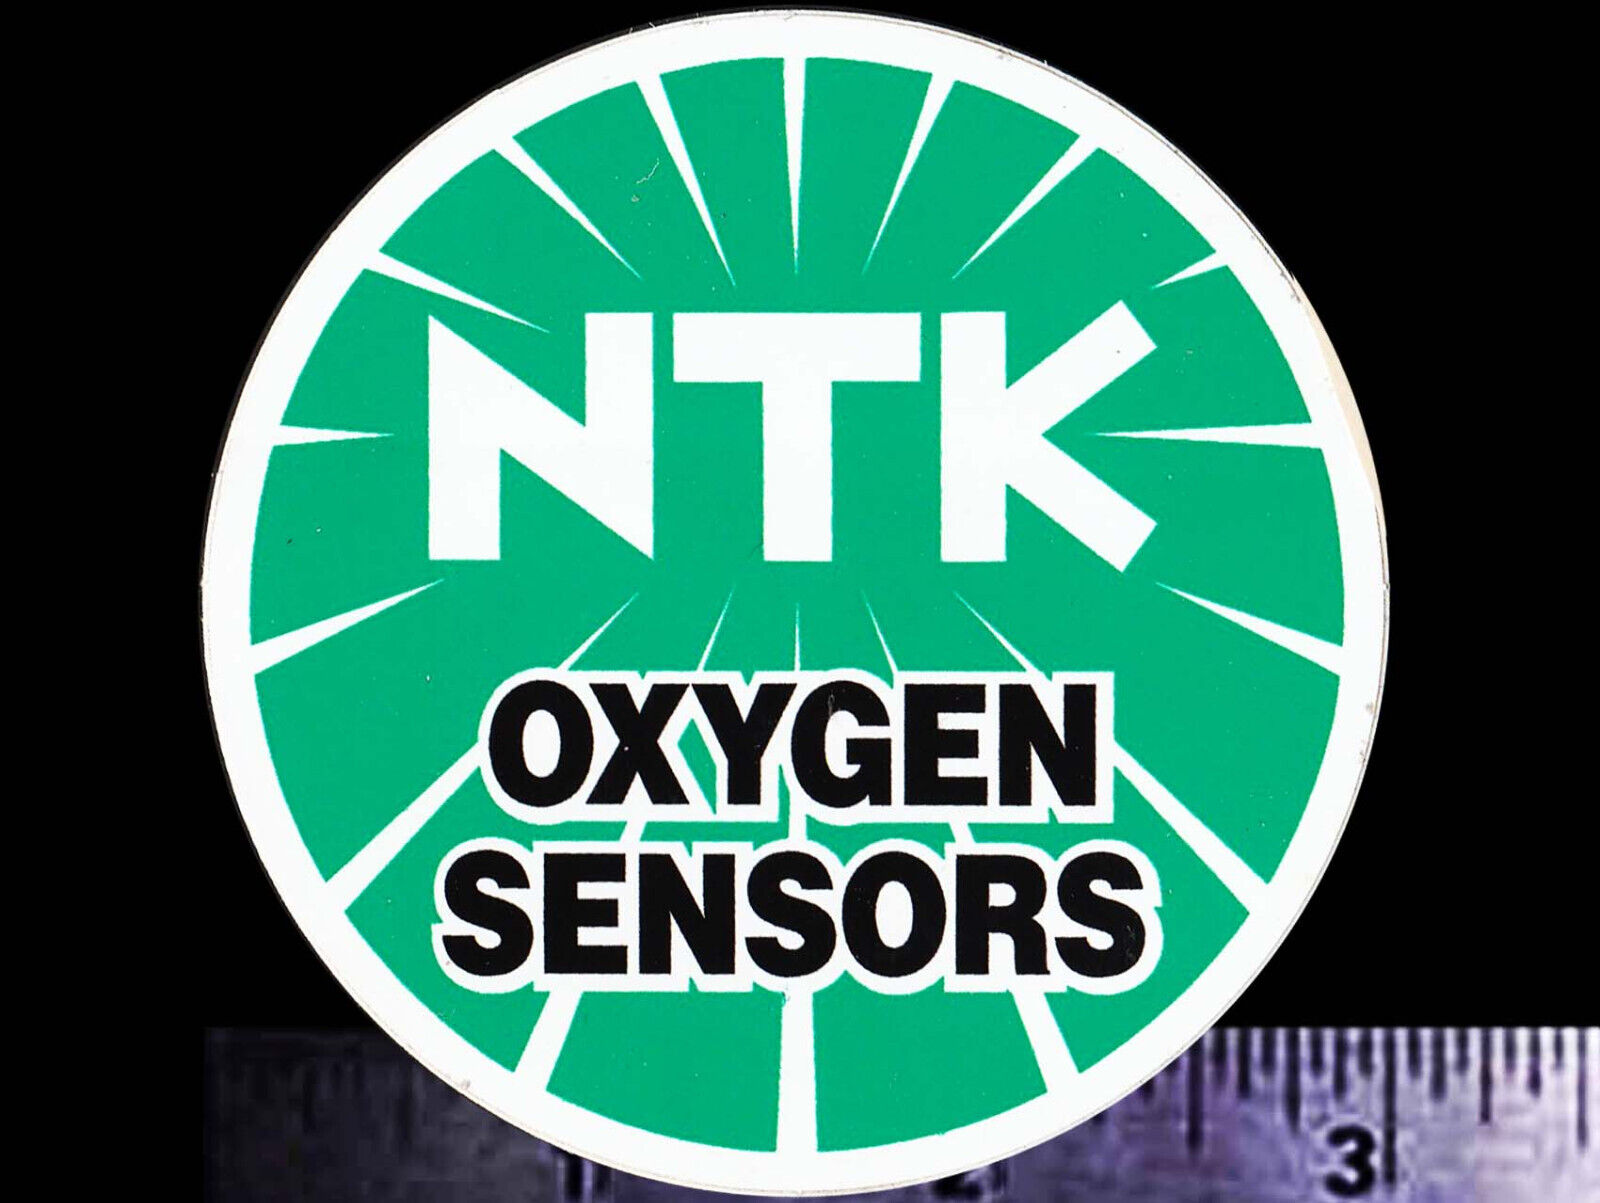 NTK Oxygen Sensors - Original Vintage Racing Decal/Sticker NGK - 3 inch size